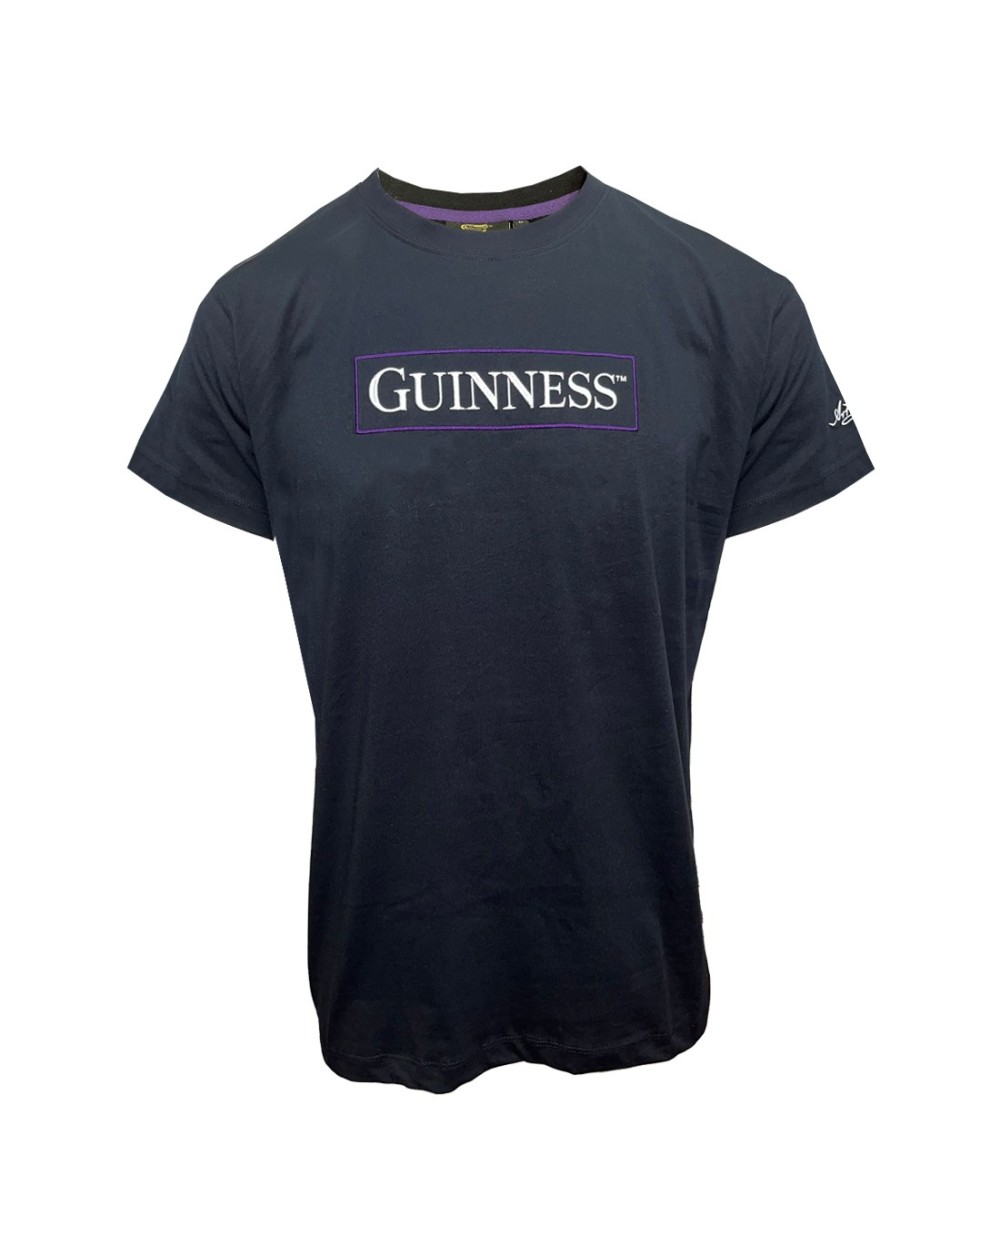 Guinness Harp Back Print T-Shirt